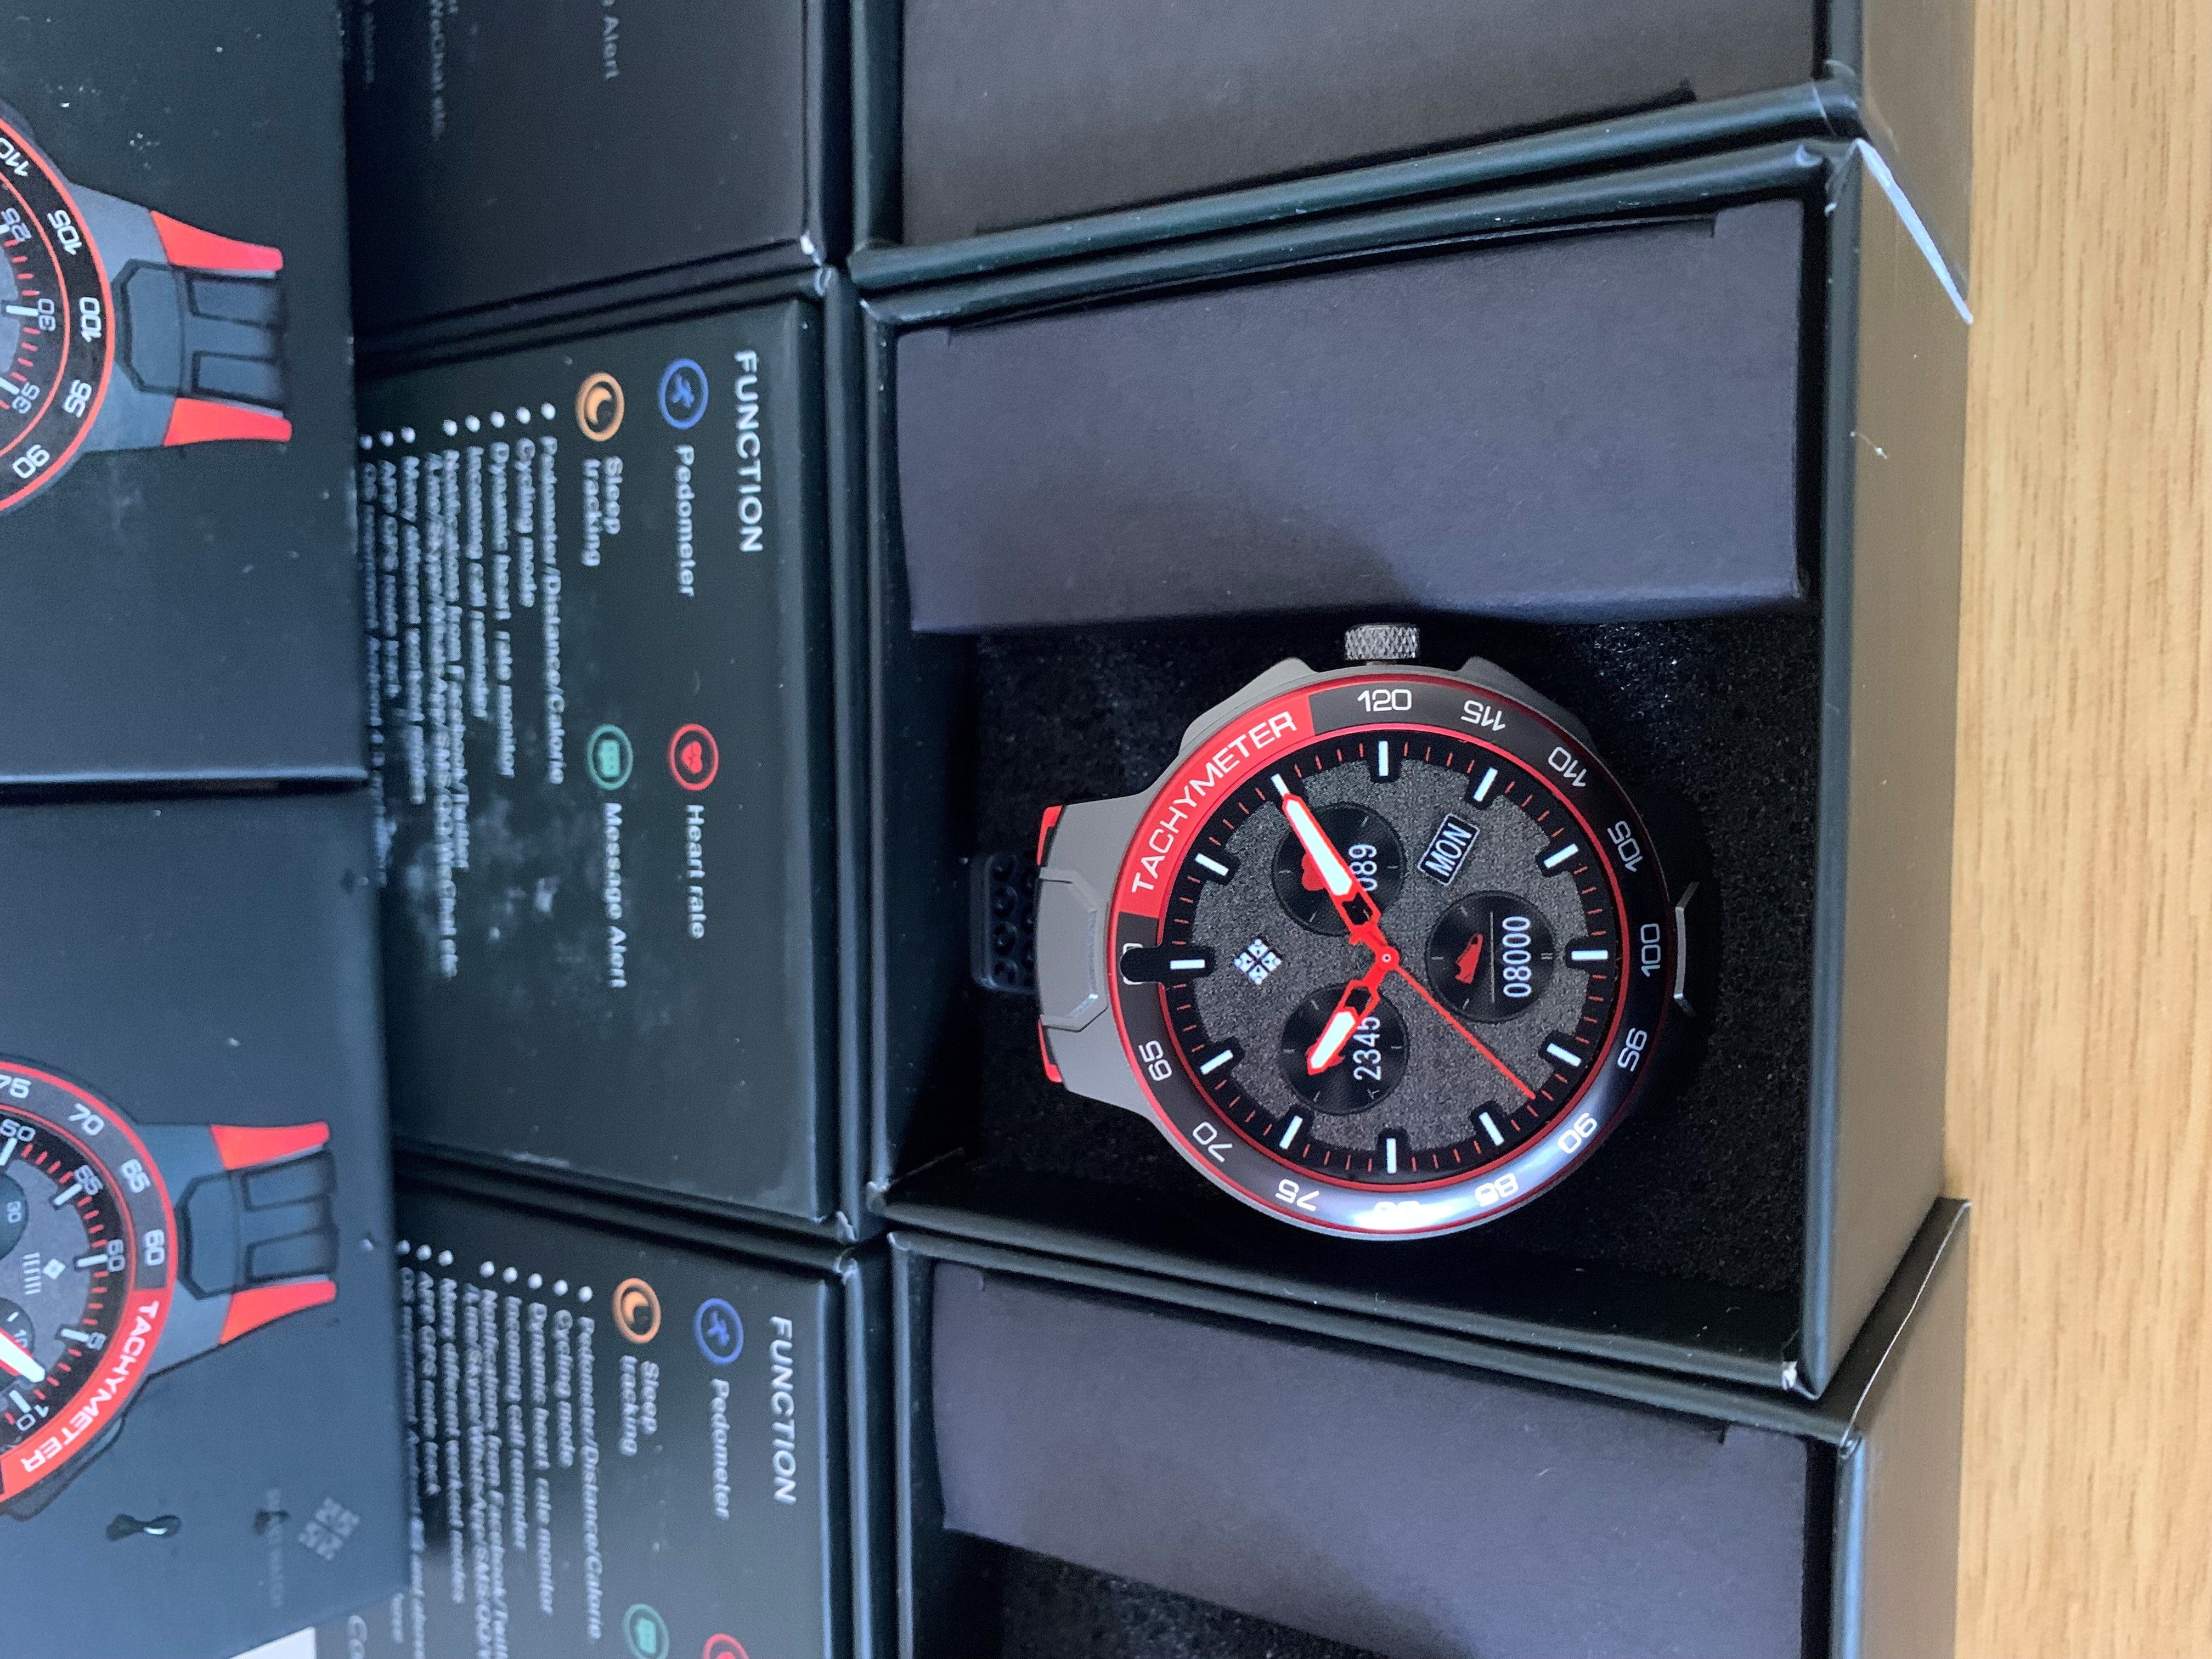 SMARTOBY E15 Red Sport Smart Watch